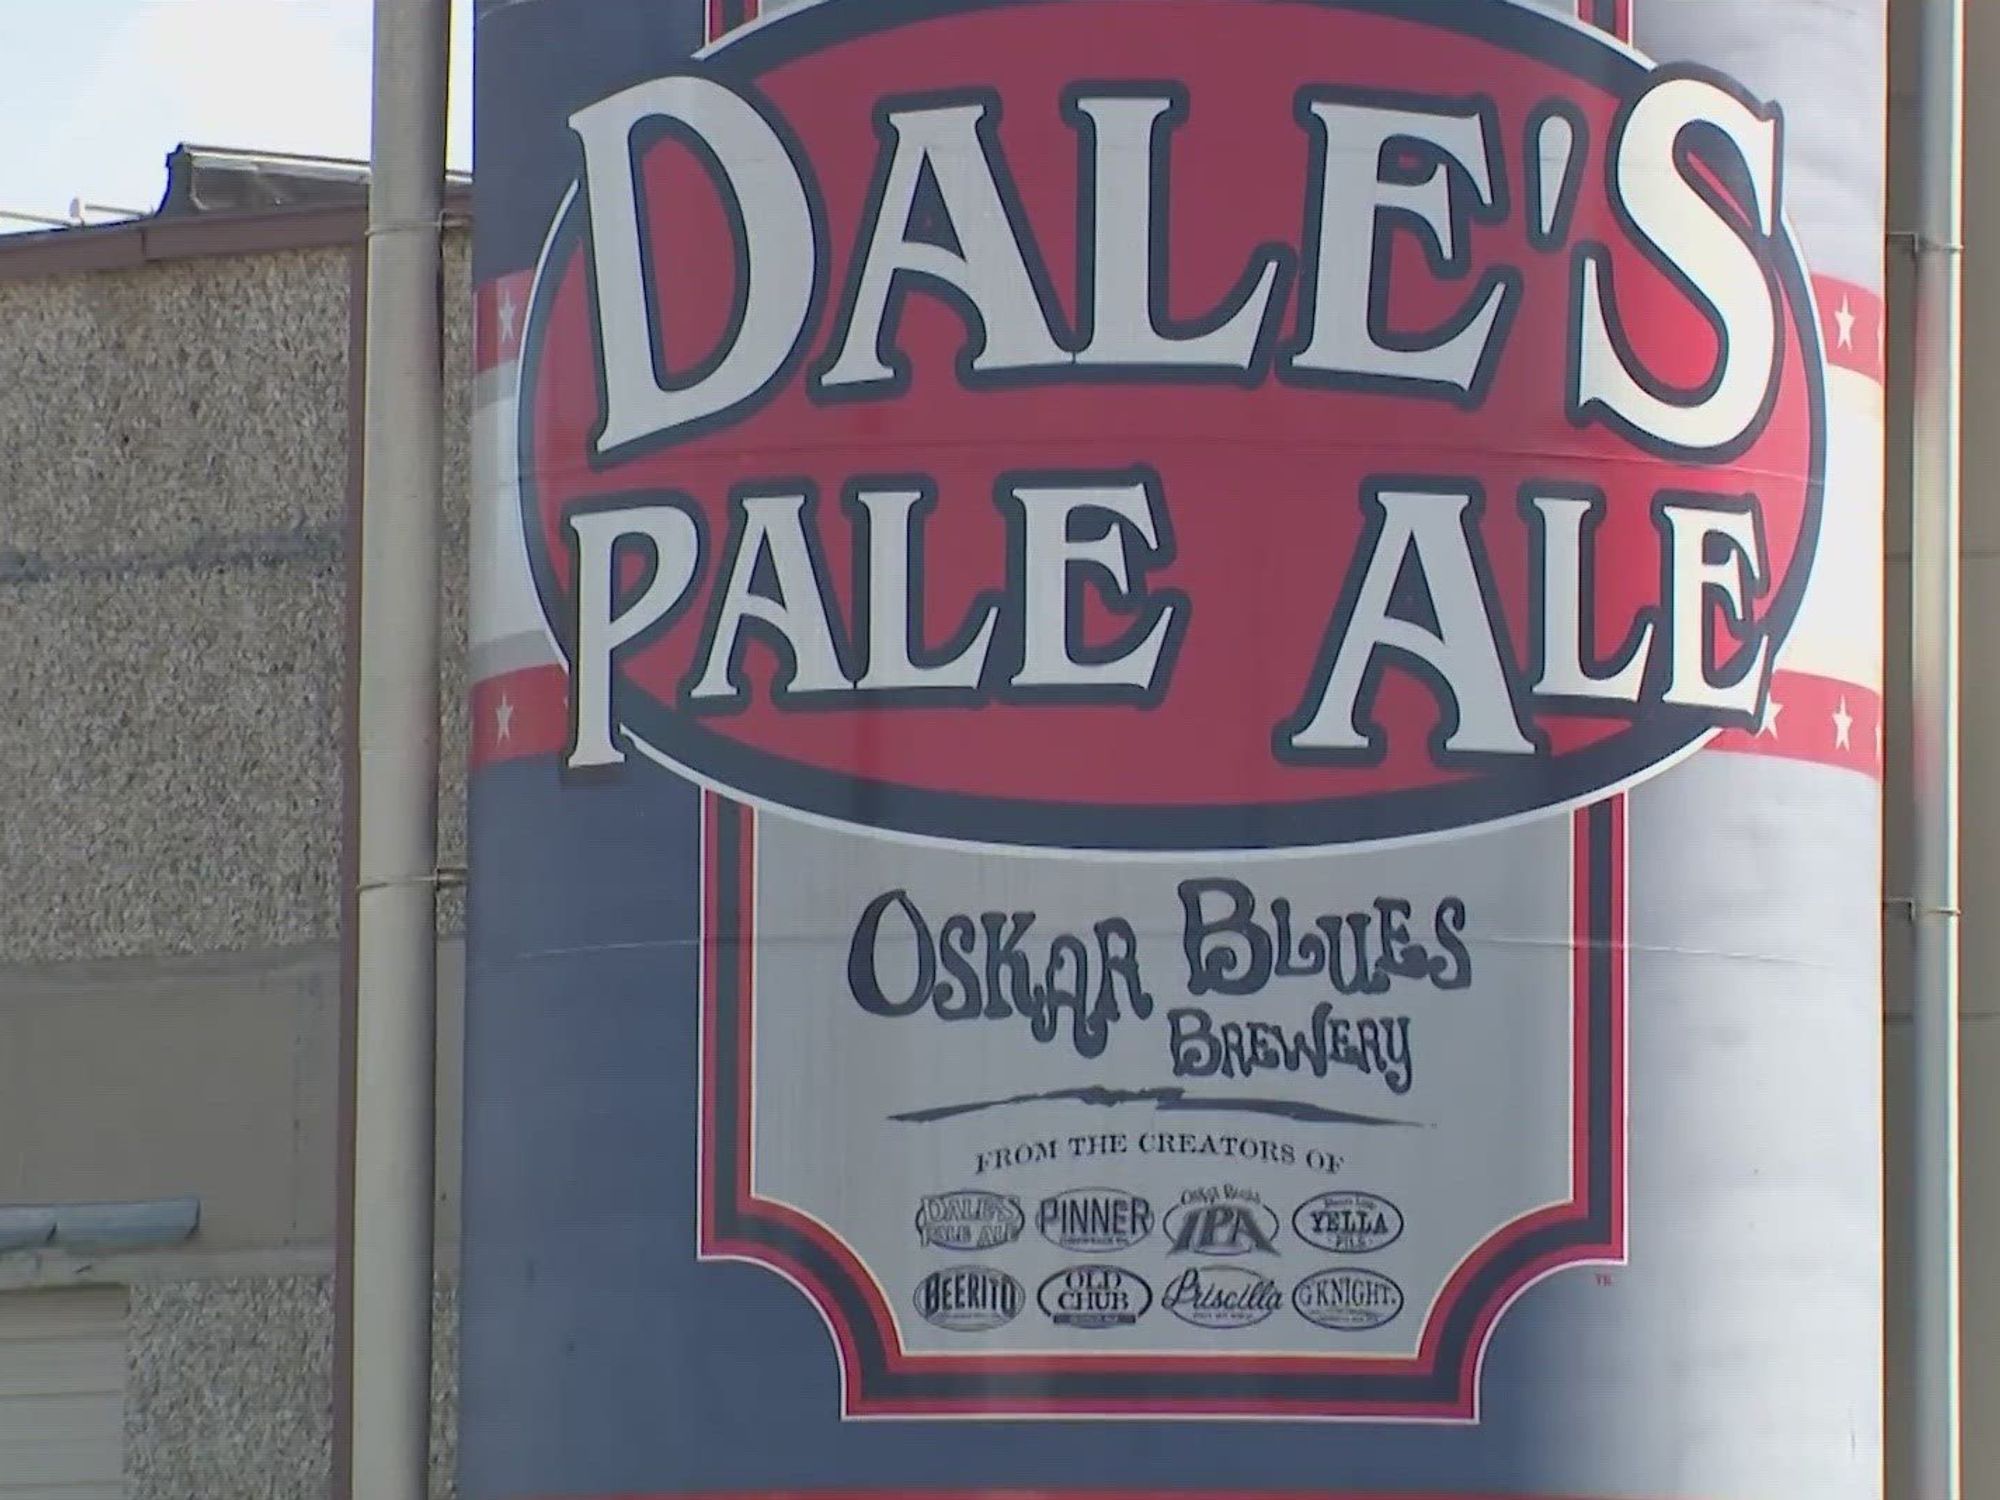 Oskar Blues Dale's Pale Ale sign